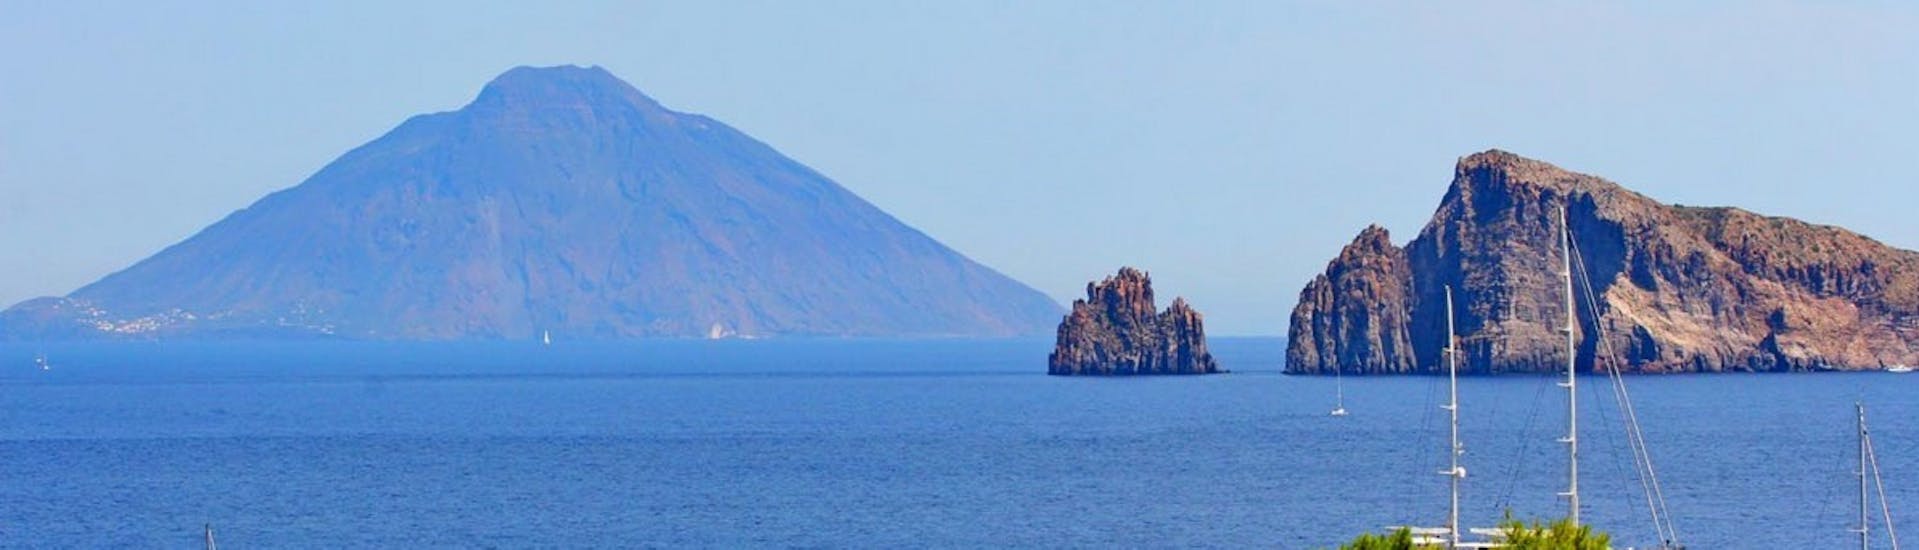 Foto delle Isole Eolie scattata durante la Gita in barca a Stromboli, Lipari e Vulcano da Tropea.